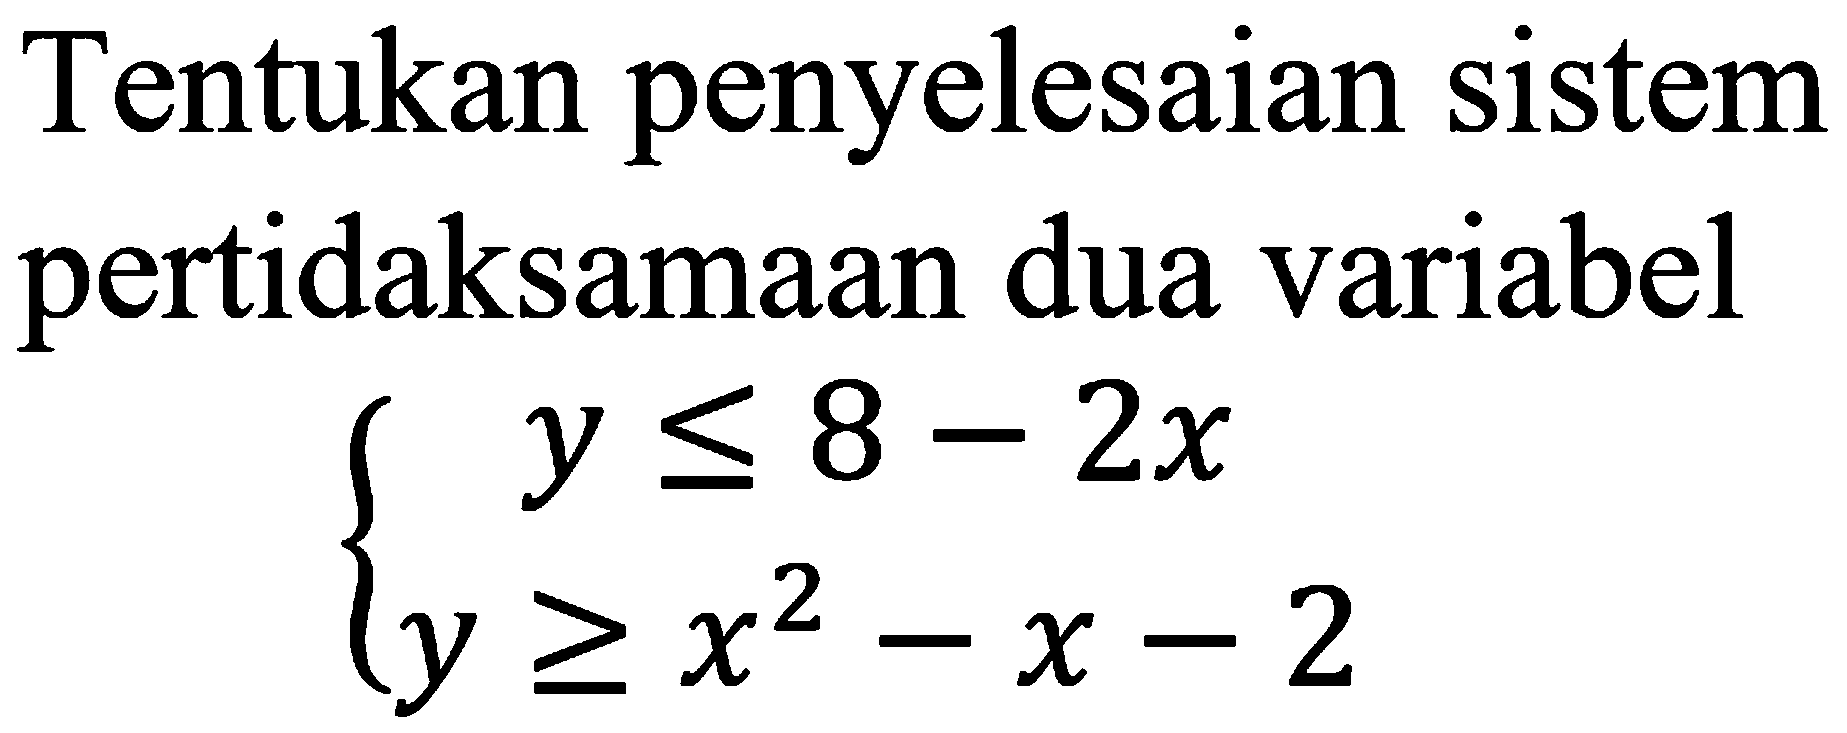 Tentukan penyelesaian sistem pertidaksamaan dua variabel y<=8-2x y>=x^2-x-2